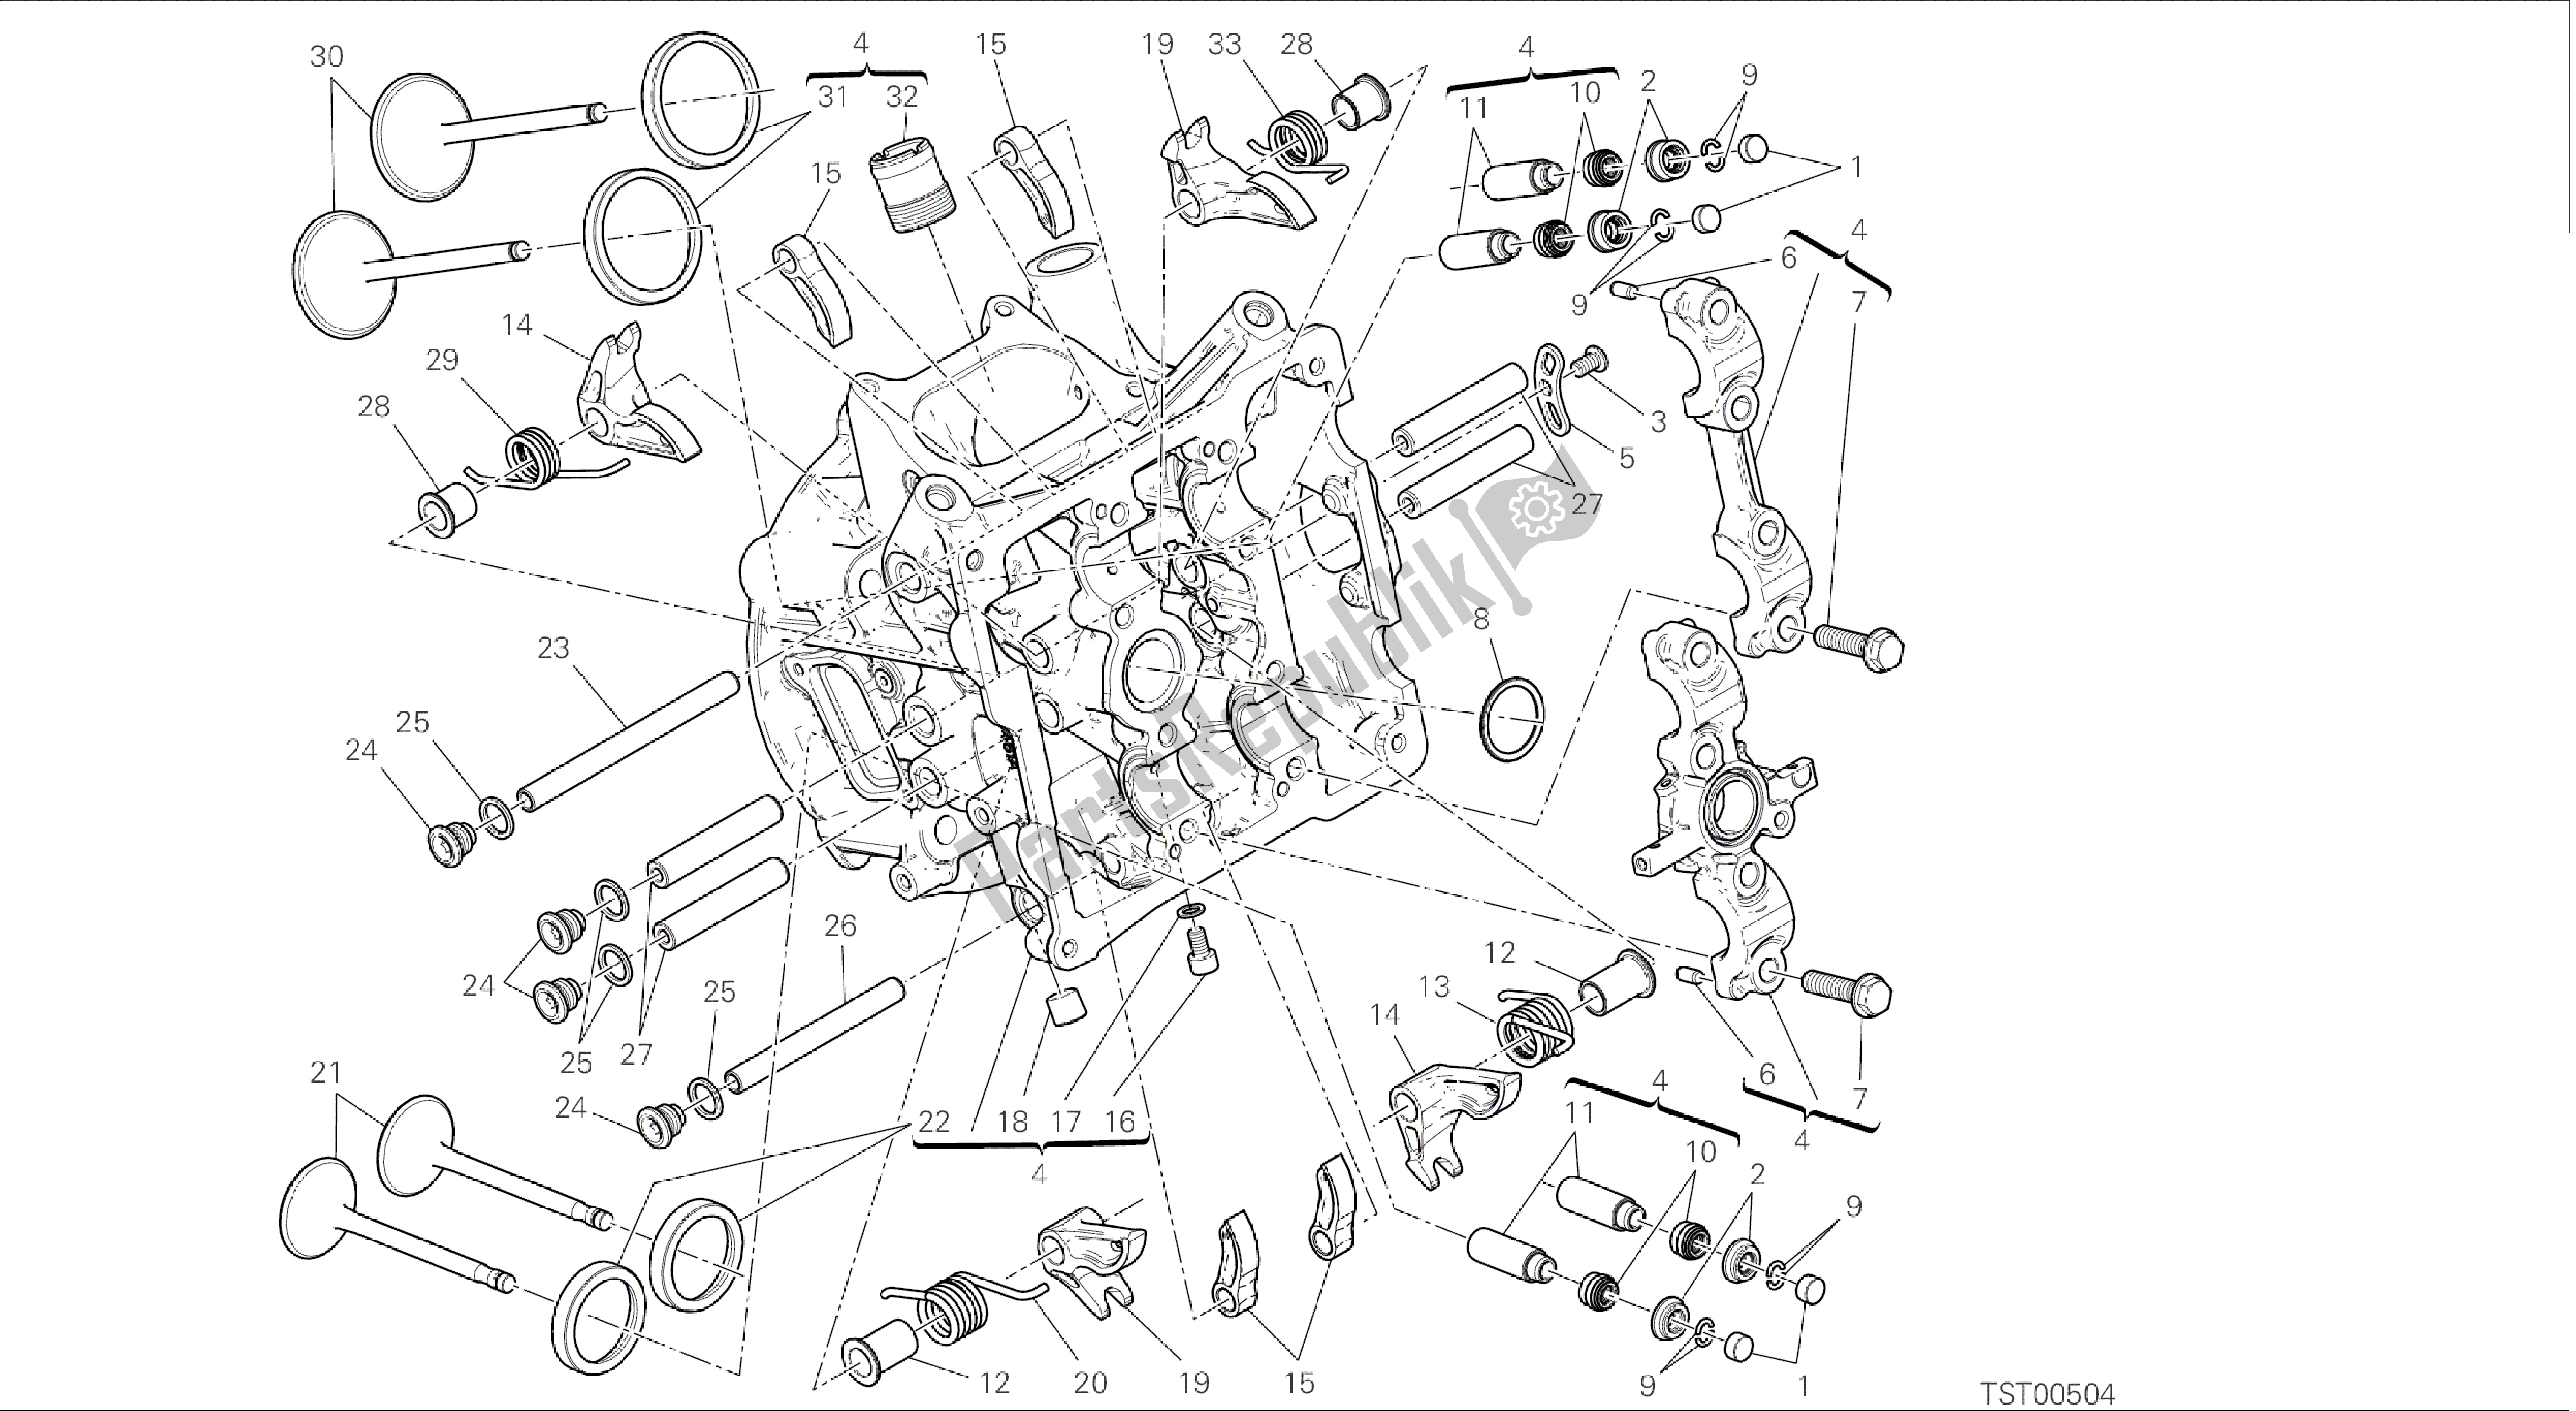 Todas las partes para Dibujo 014 - Cabezal Horizontal [mod: 899 Abs; Xst: Motor De Grupo Aus, Eur, Fra, Jap, Twn] de Ducati Panigale 899 2014